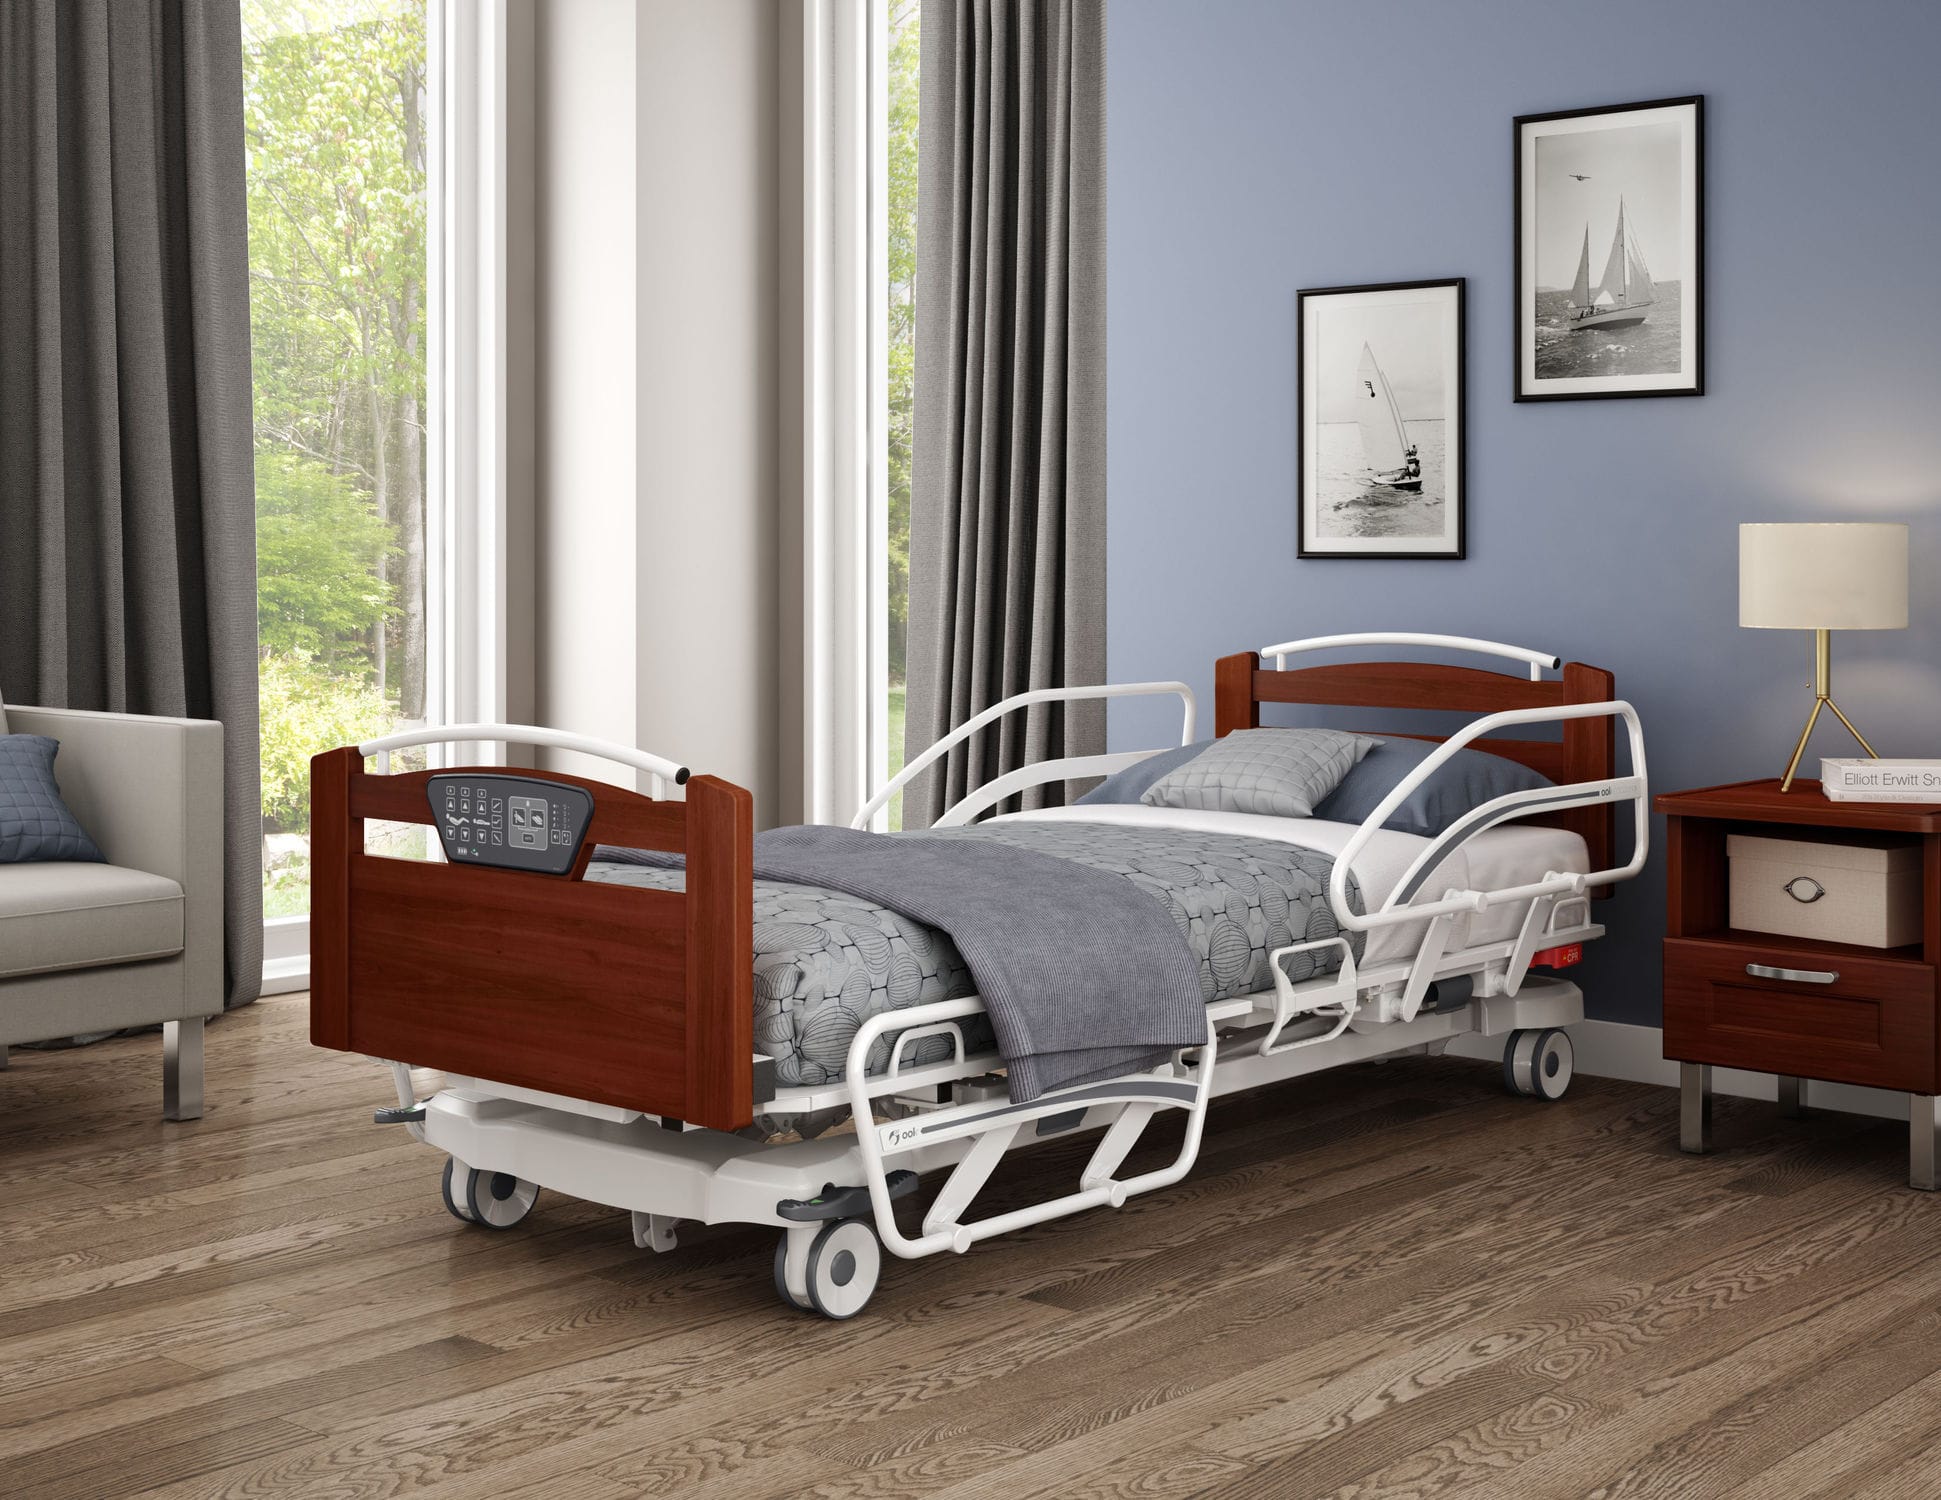 Hospital Beds for HomeHomeCare Hospital Beds Official Blog